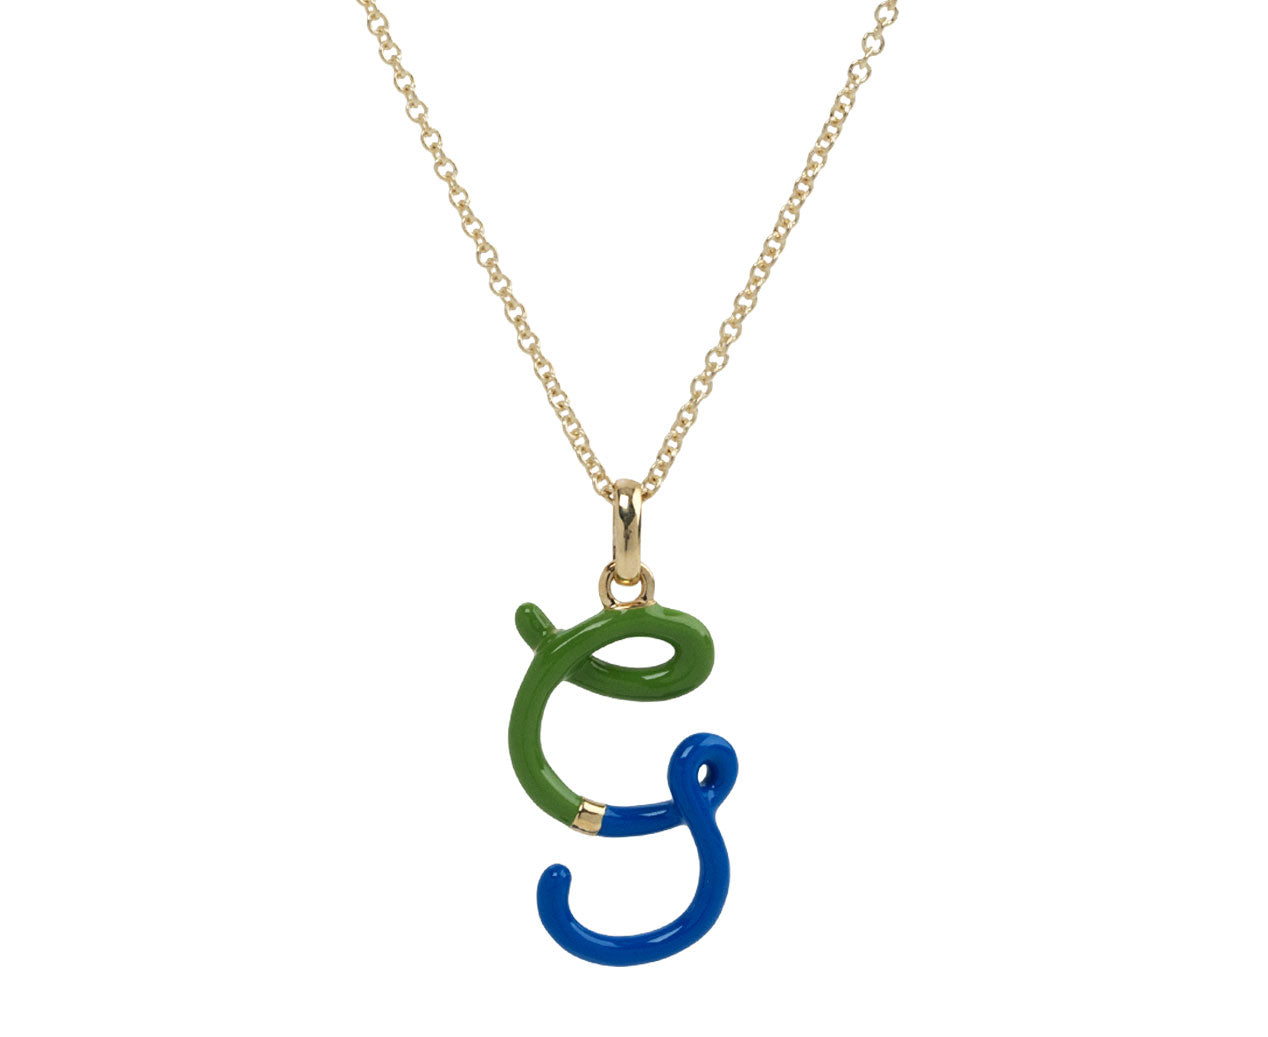 Cobalt and Pistachio Enamel 'G' Pendant Necklace